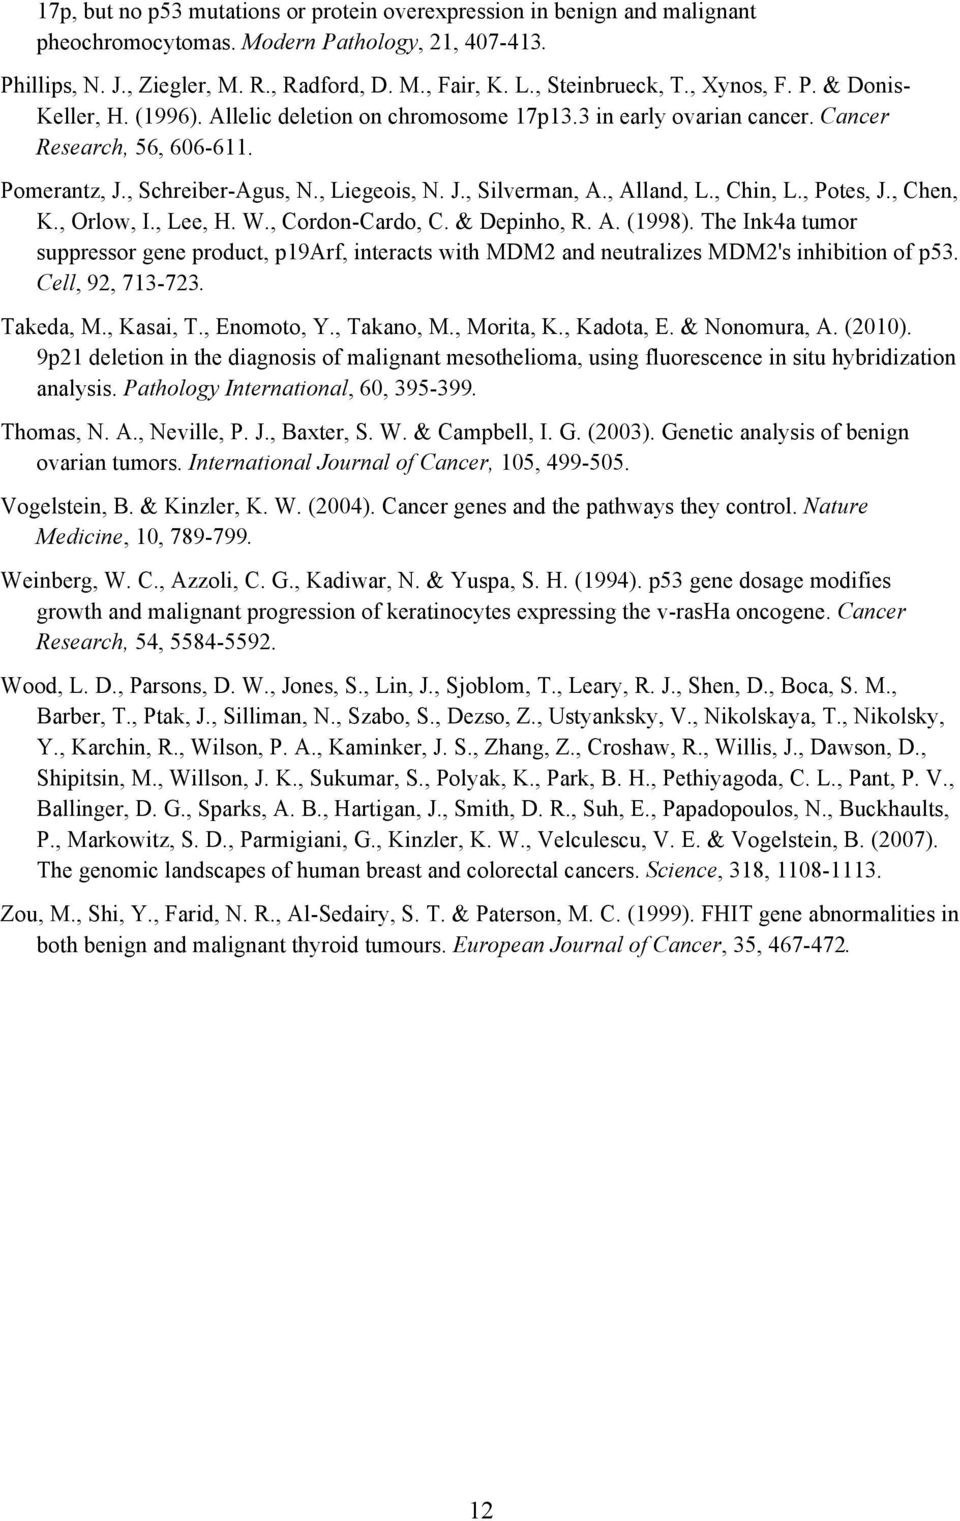 , Liegeois, N. J., Silverman, A., Alland, L., Chin, L., Potes, J., Chen, K., Orlow, I., Lee, H. W., Cordon-Cardo, C. & Depinho, R. A. (1998).